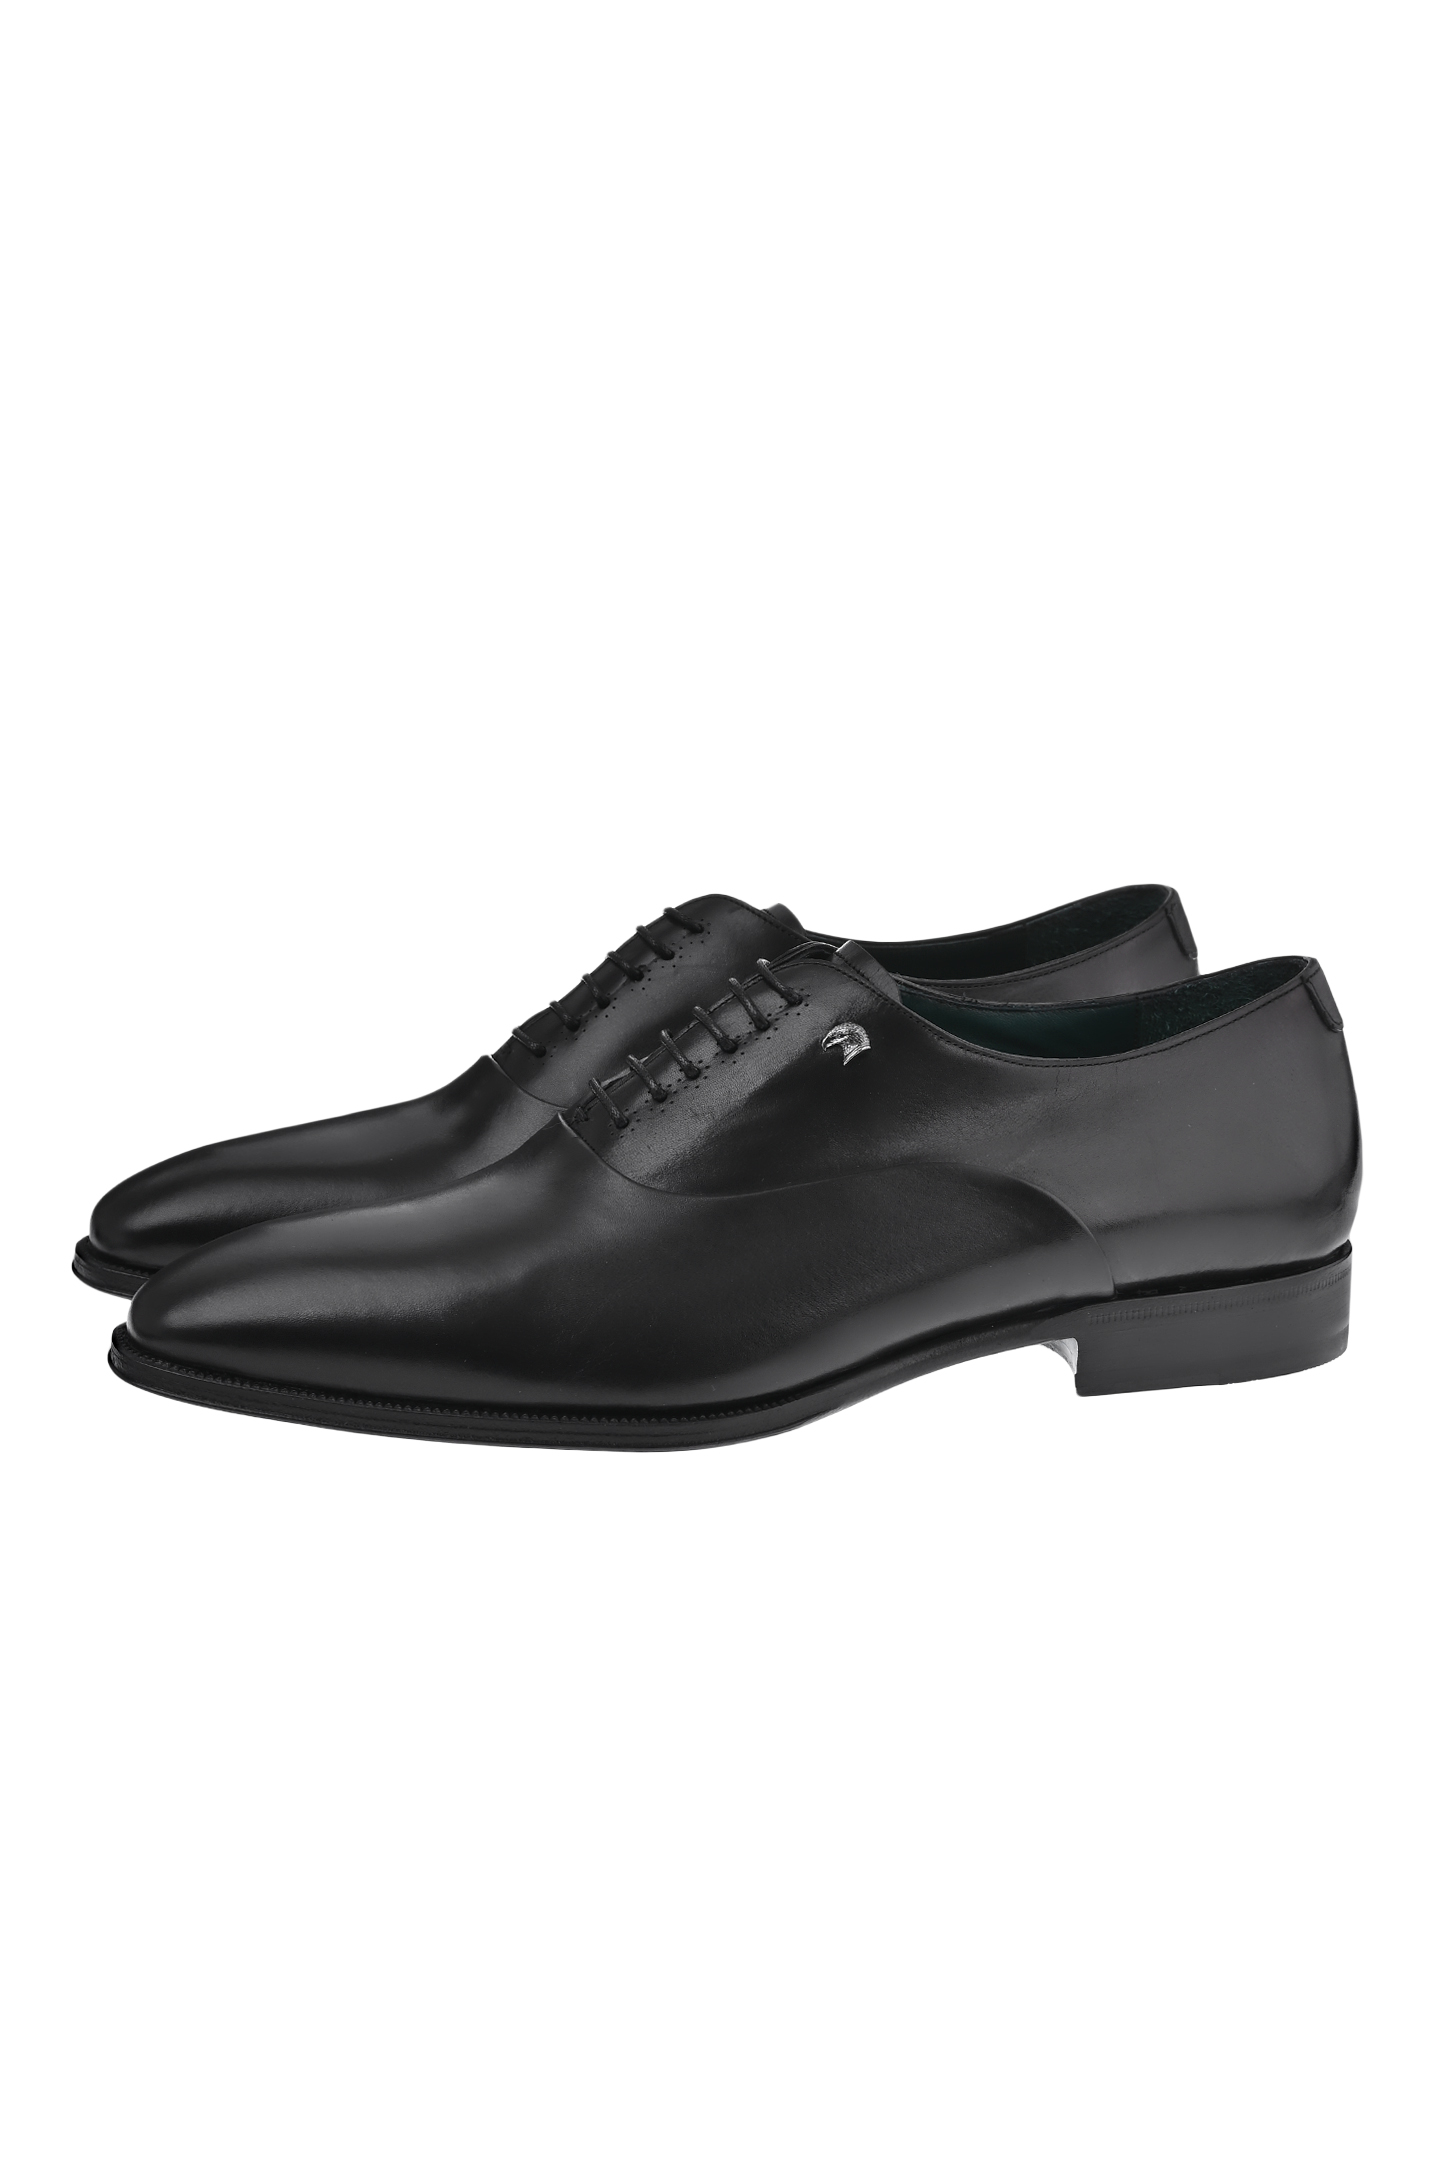 Туфли STEFANO RICCI US02_C6198 VS, цвет: Черный, Мужской